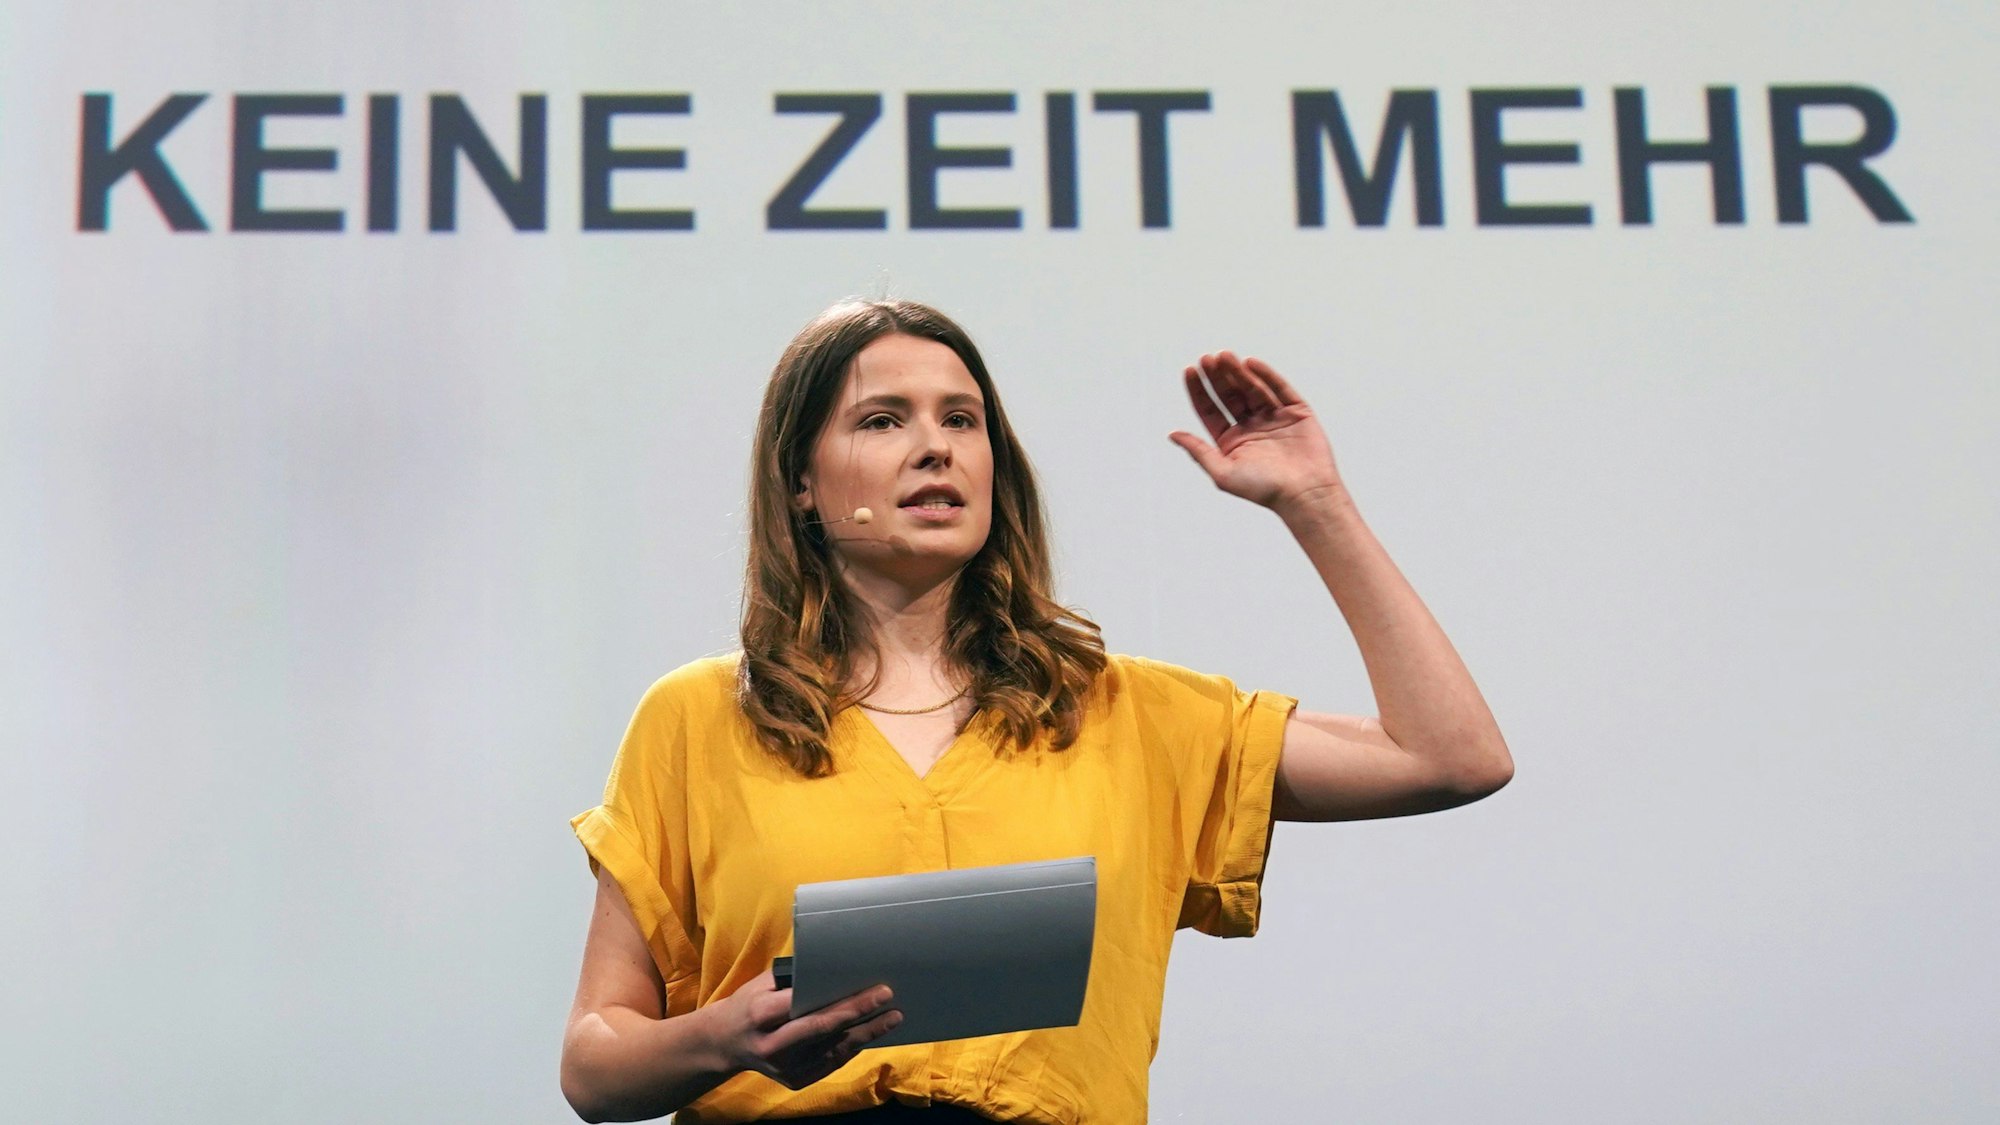 Klimaaktivistin Luisa Neubauer bei der Digital-Messe OMR in Hamburg. Neubauer kritisiert Verkehrsminister Volker Wissing.+